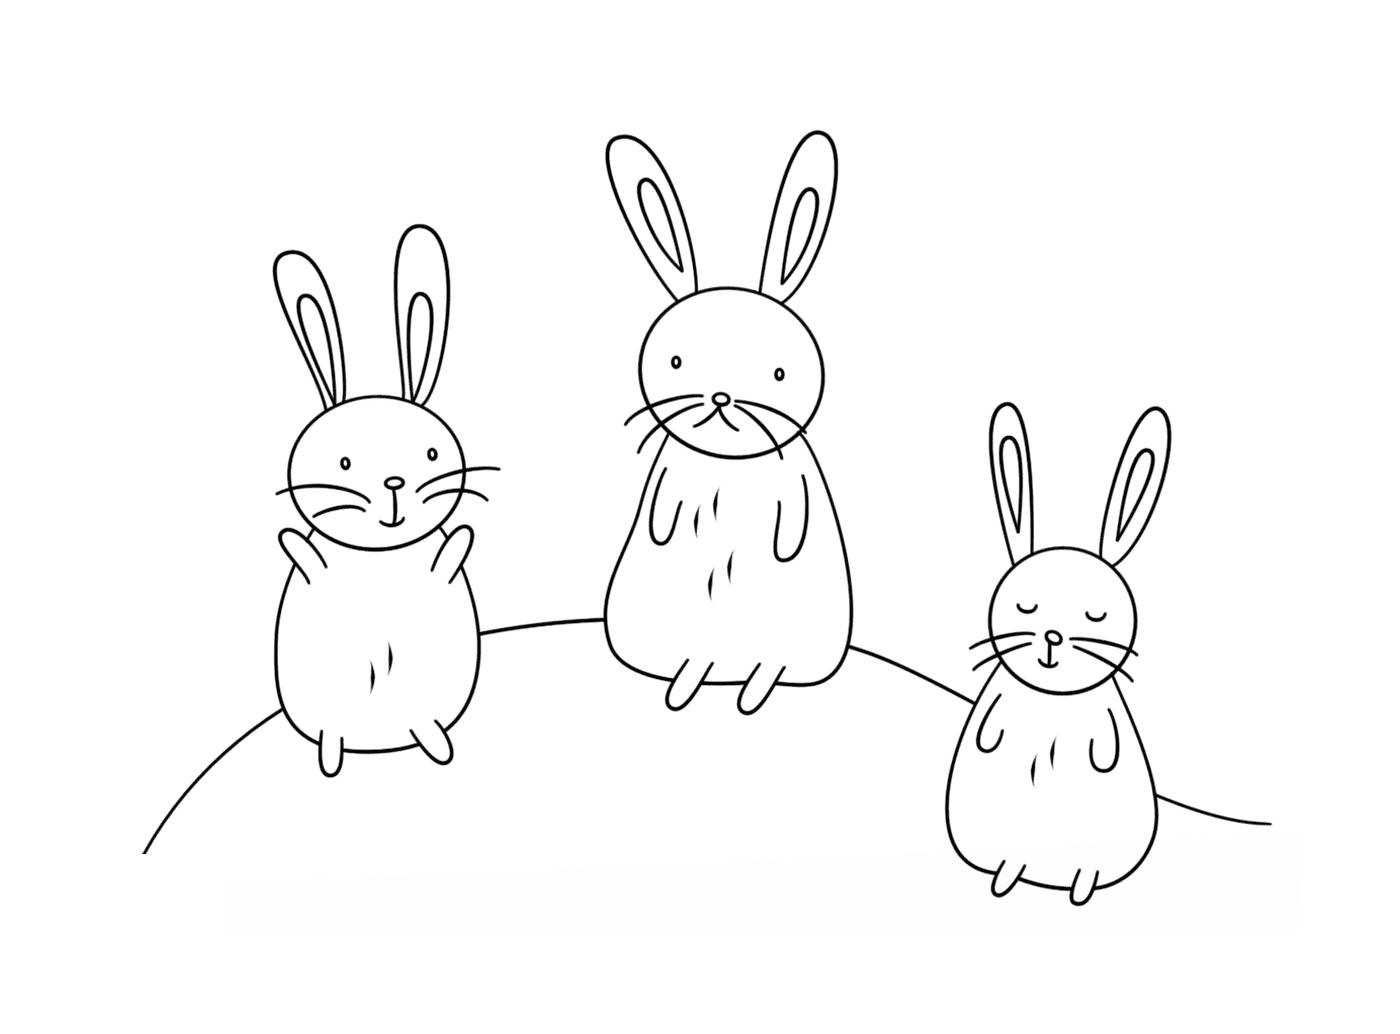  分组的可爱兔子 